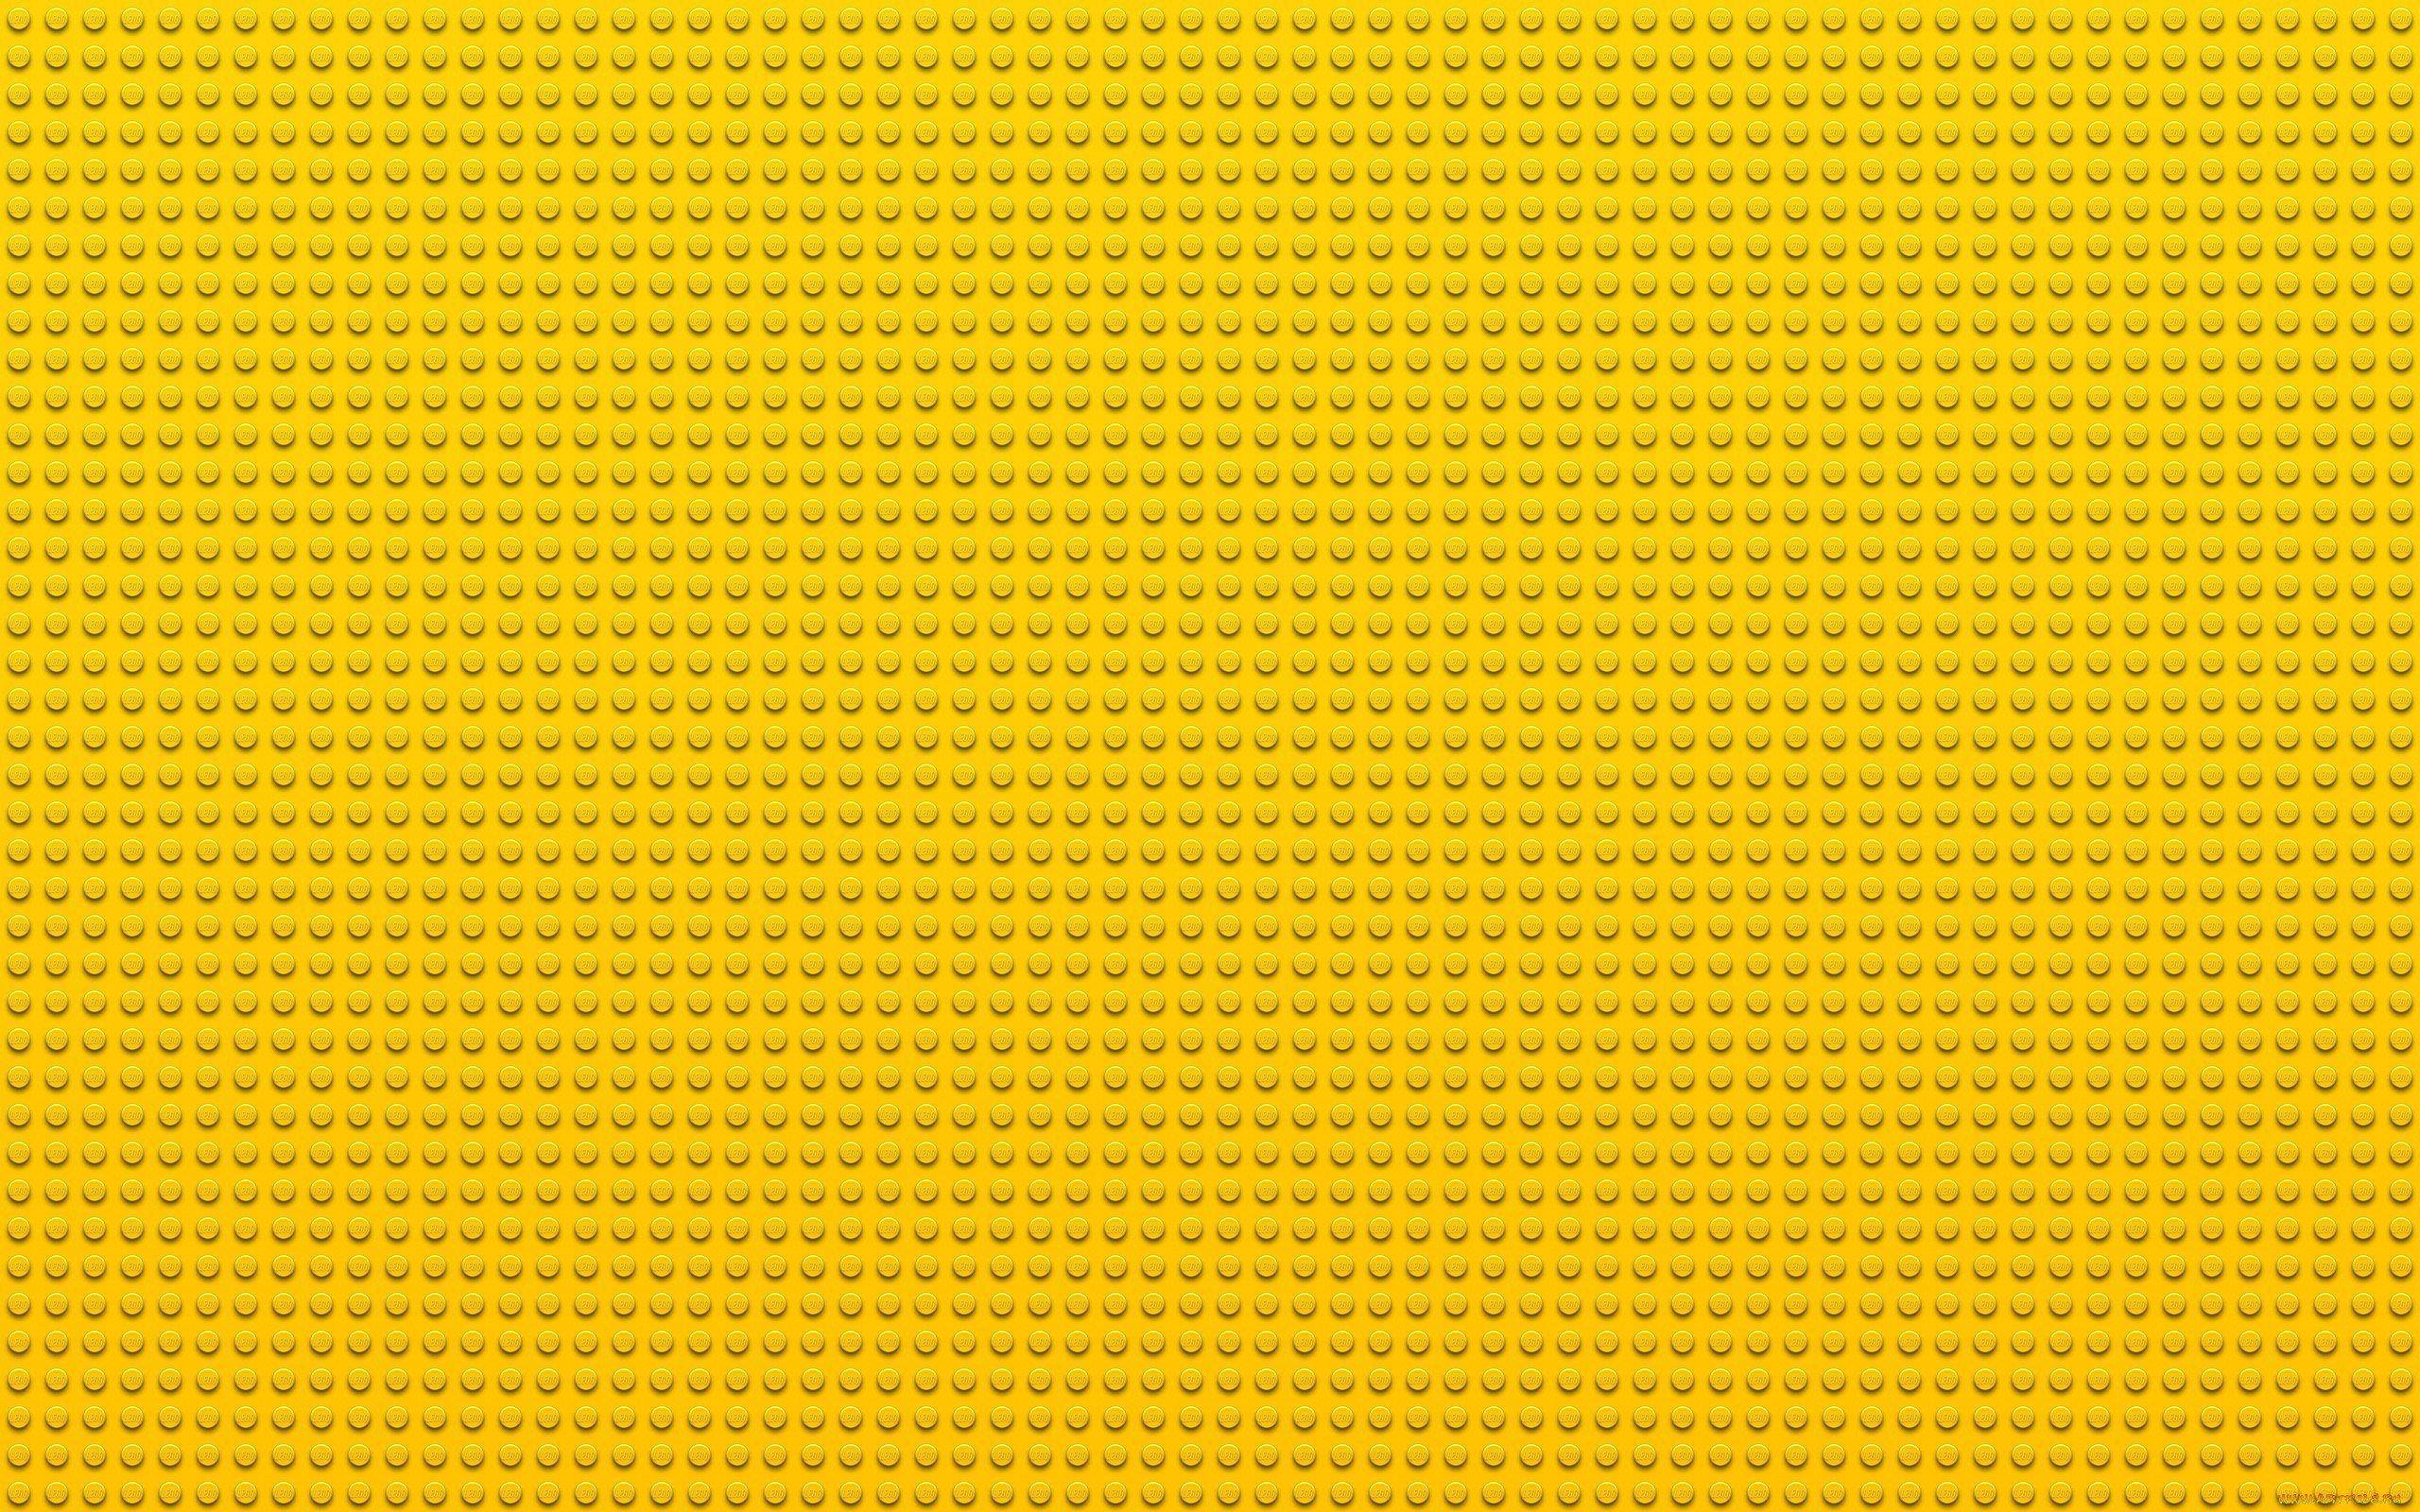 Желтая текстура